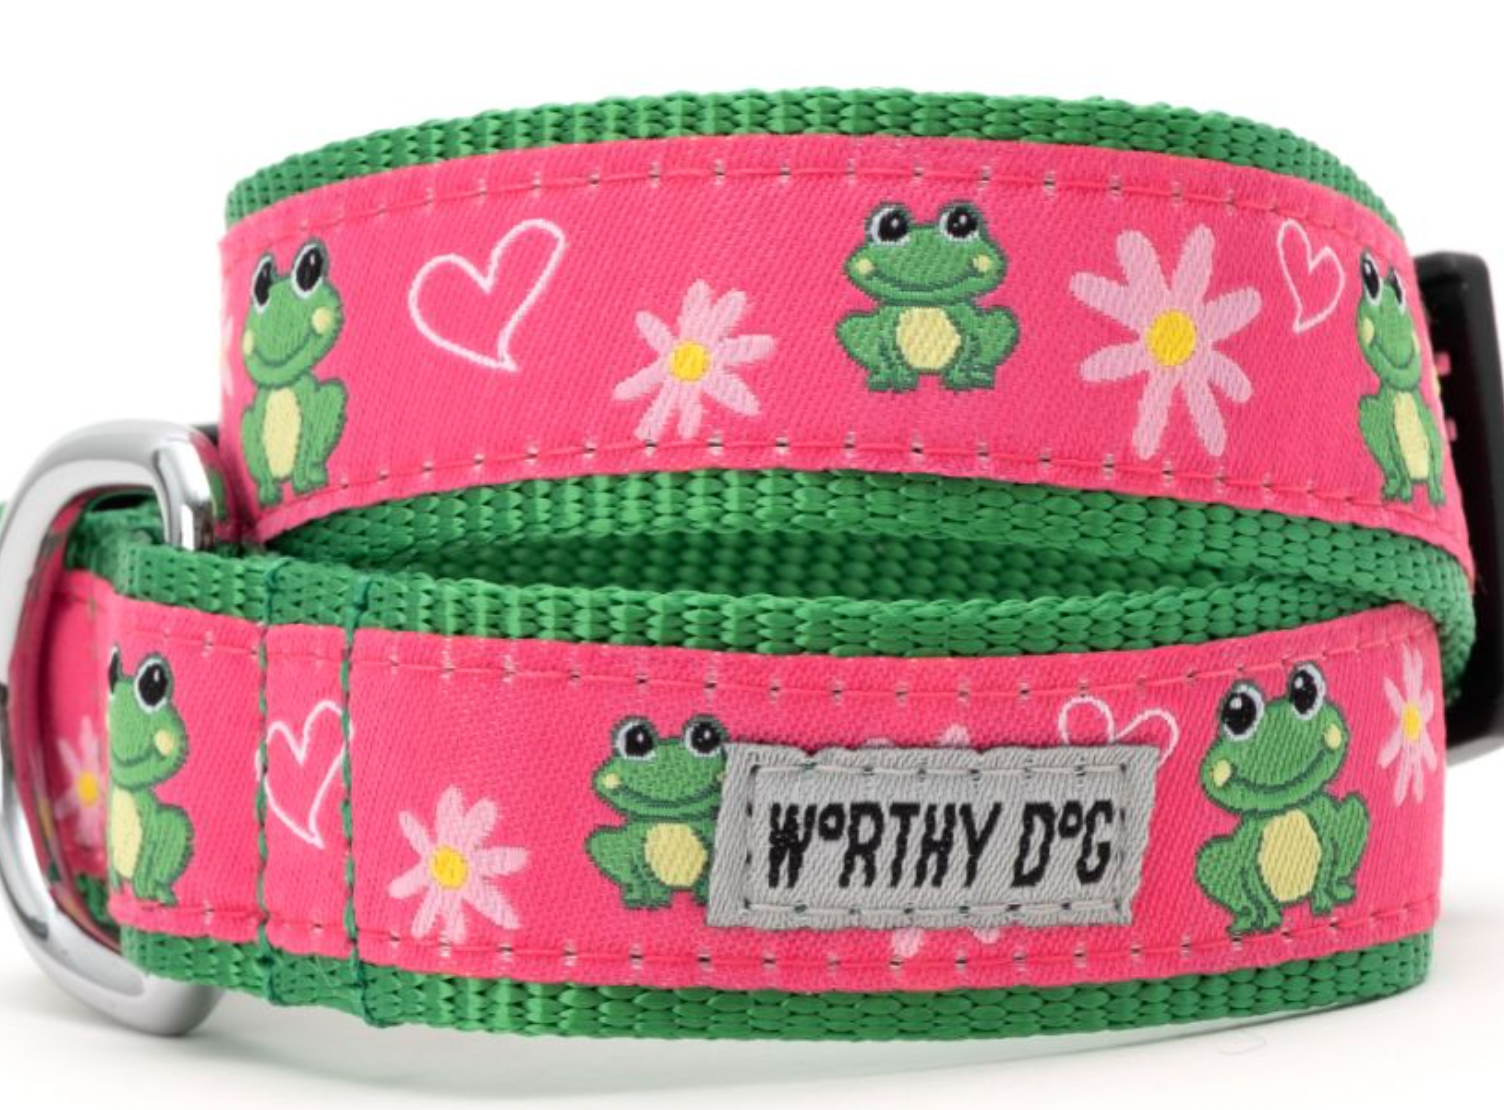 The Worthy Dog "Ribbit Frog" Dog Collar